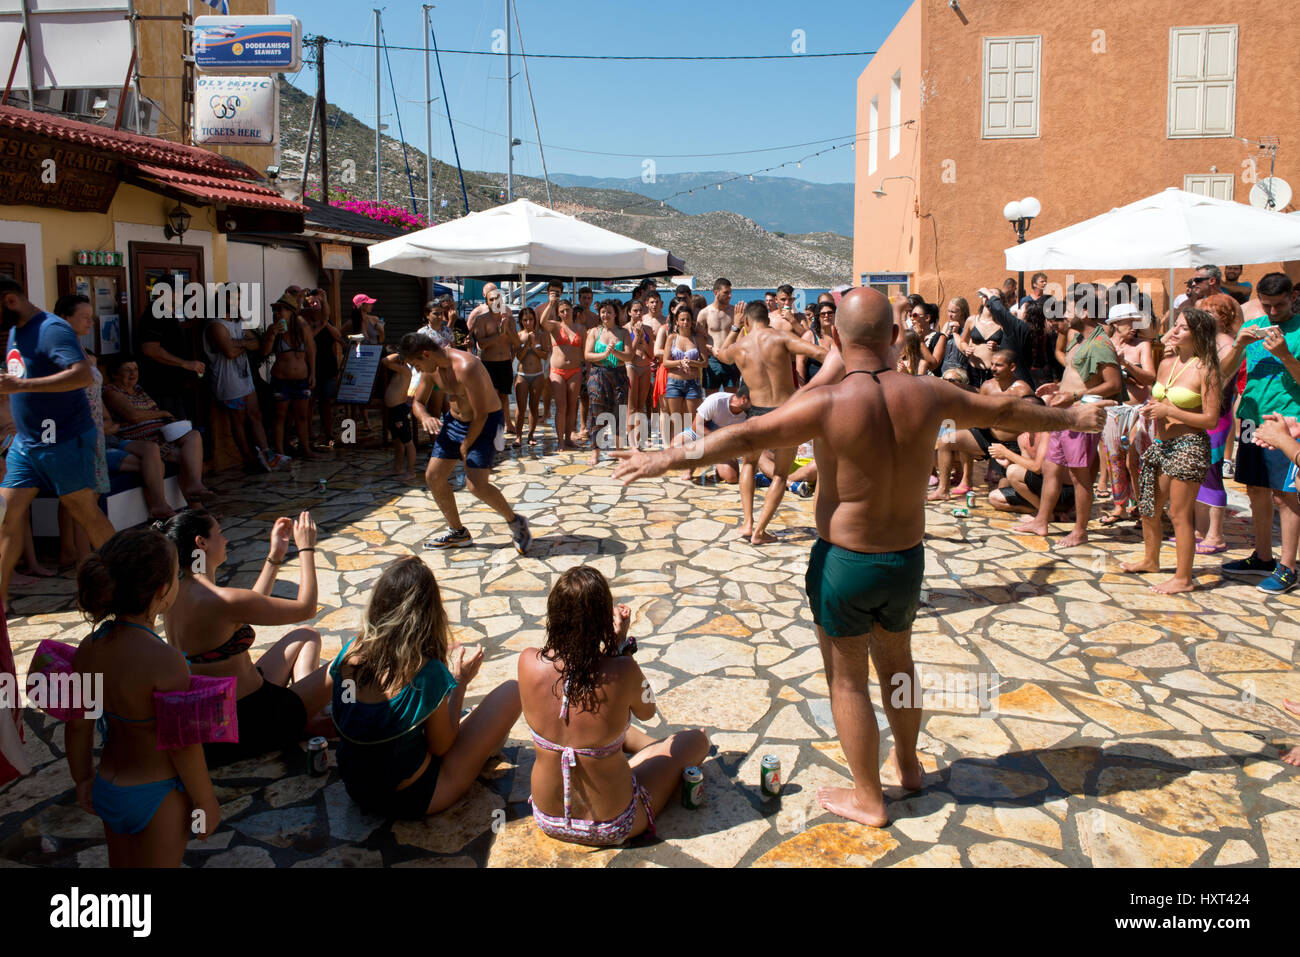 Tänzer und Publikum in Badekleidung auf gepflastertem Dorfplatz vor rötlichen Haus und Meer, Insel Kastellorizo, Dodekanes, Griechenland Stock Photo